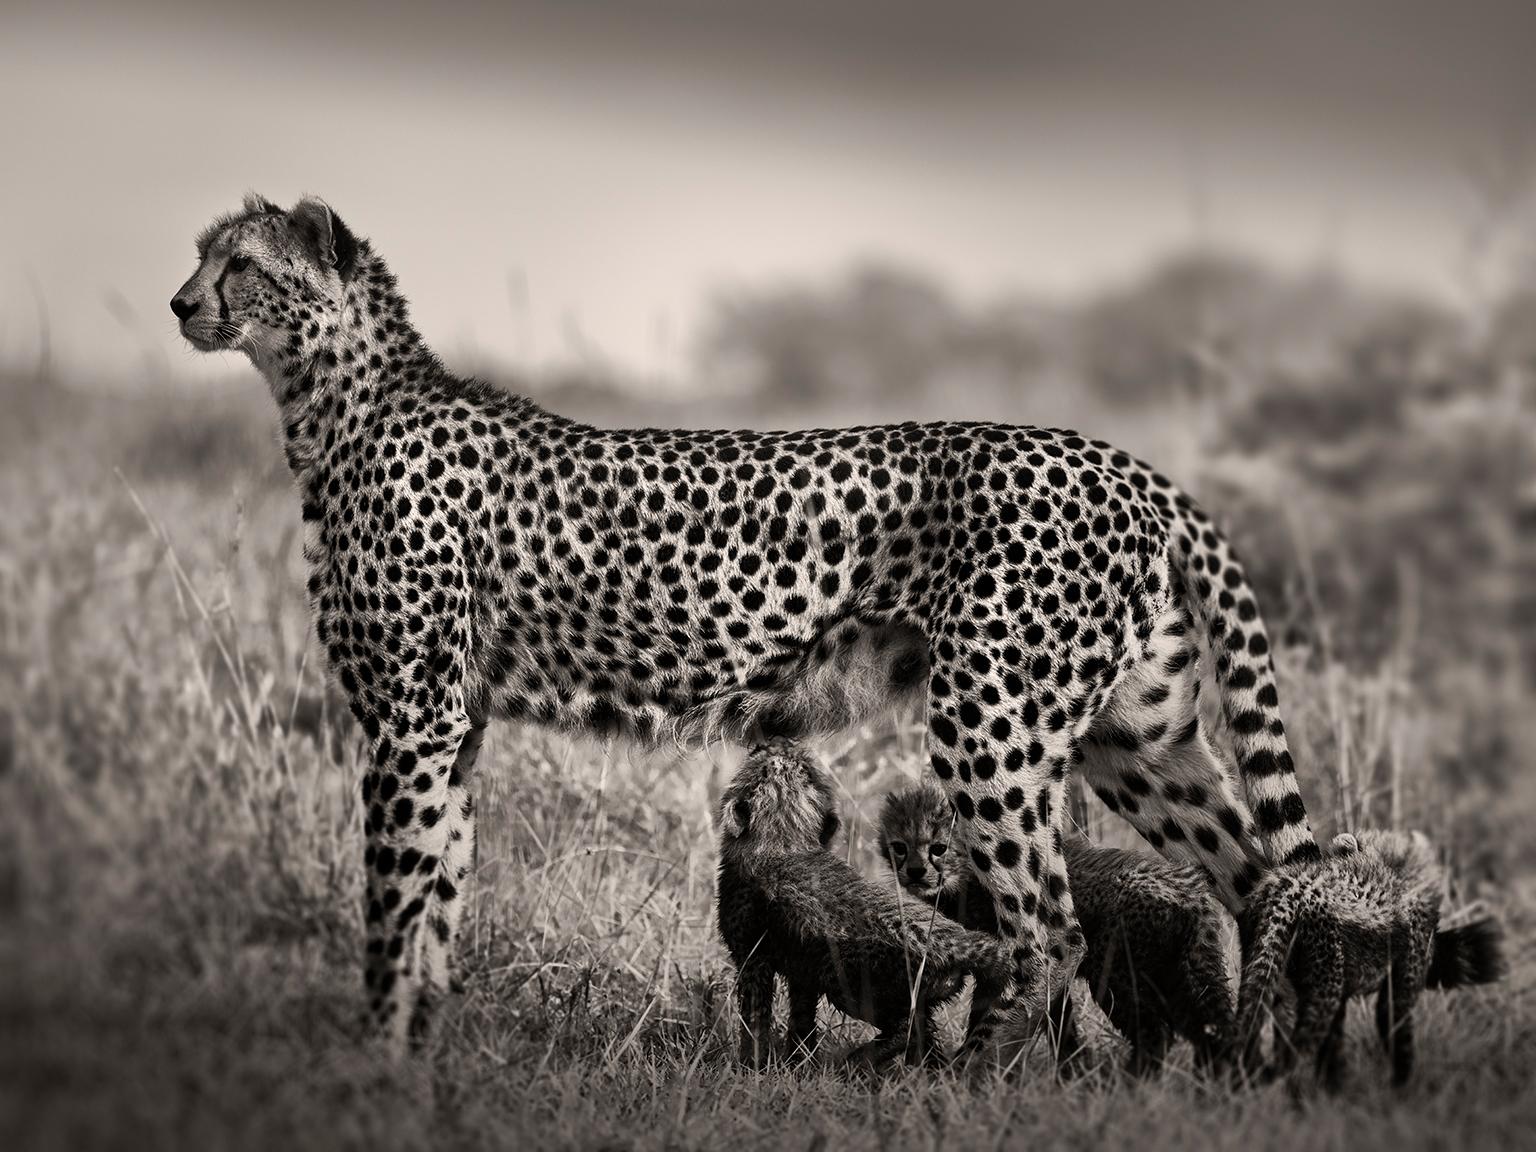 Joachim Schmeisser Black and White Photograph – Cheetah säugt Babys, Schwarz-Weiß-Fotografie, Afrika, Porträt, Tierwelt